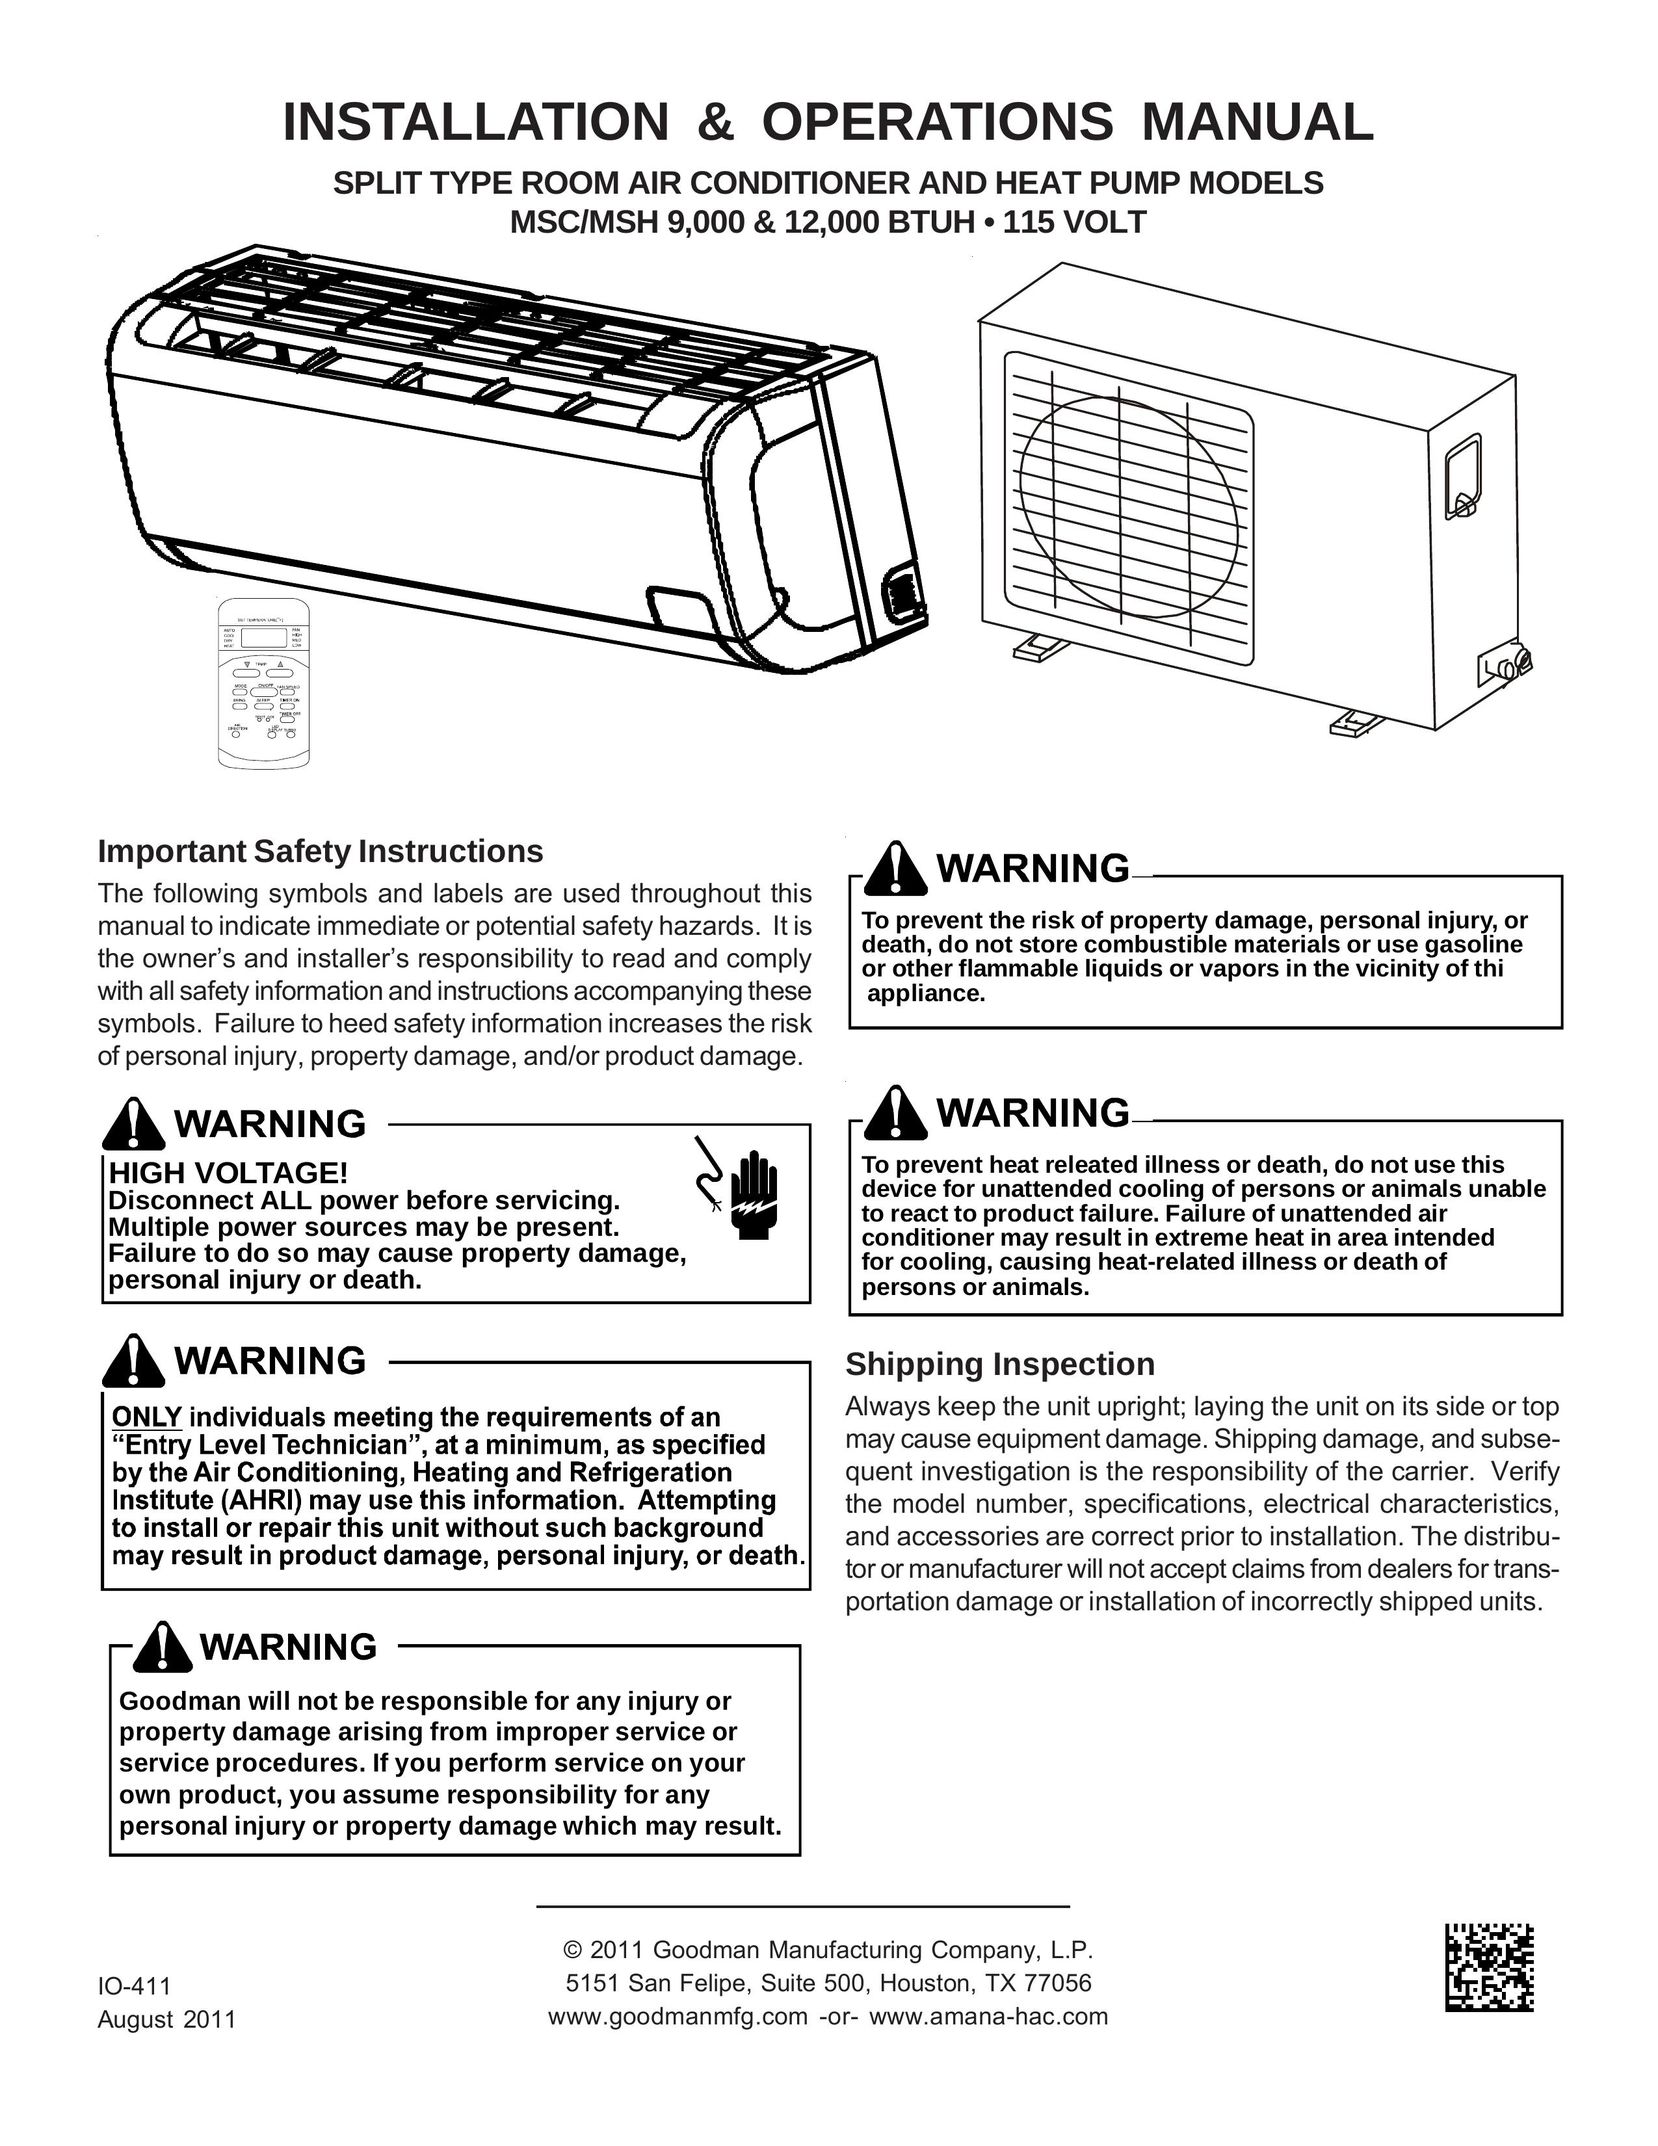 Goodman Mfg 000 BTUH + 115 Volt Air Conditioner User Manual